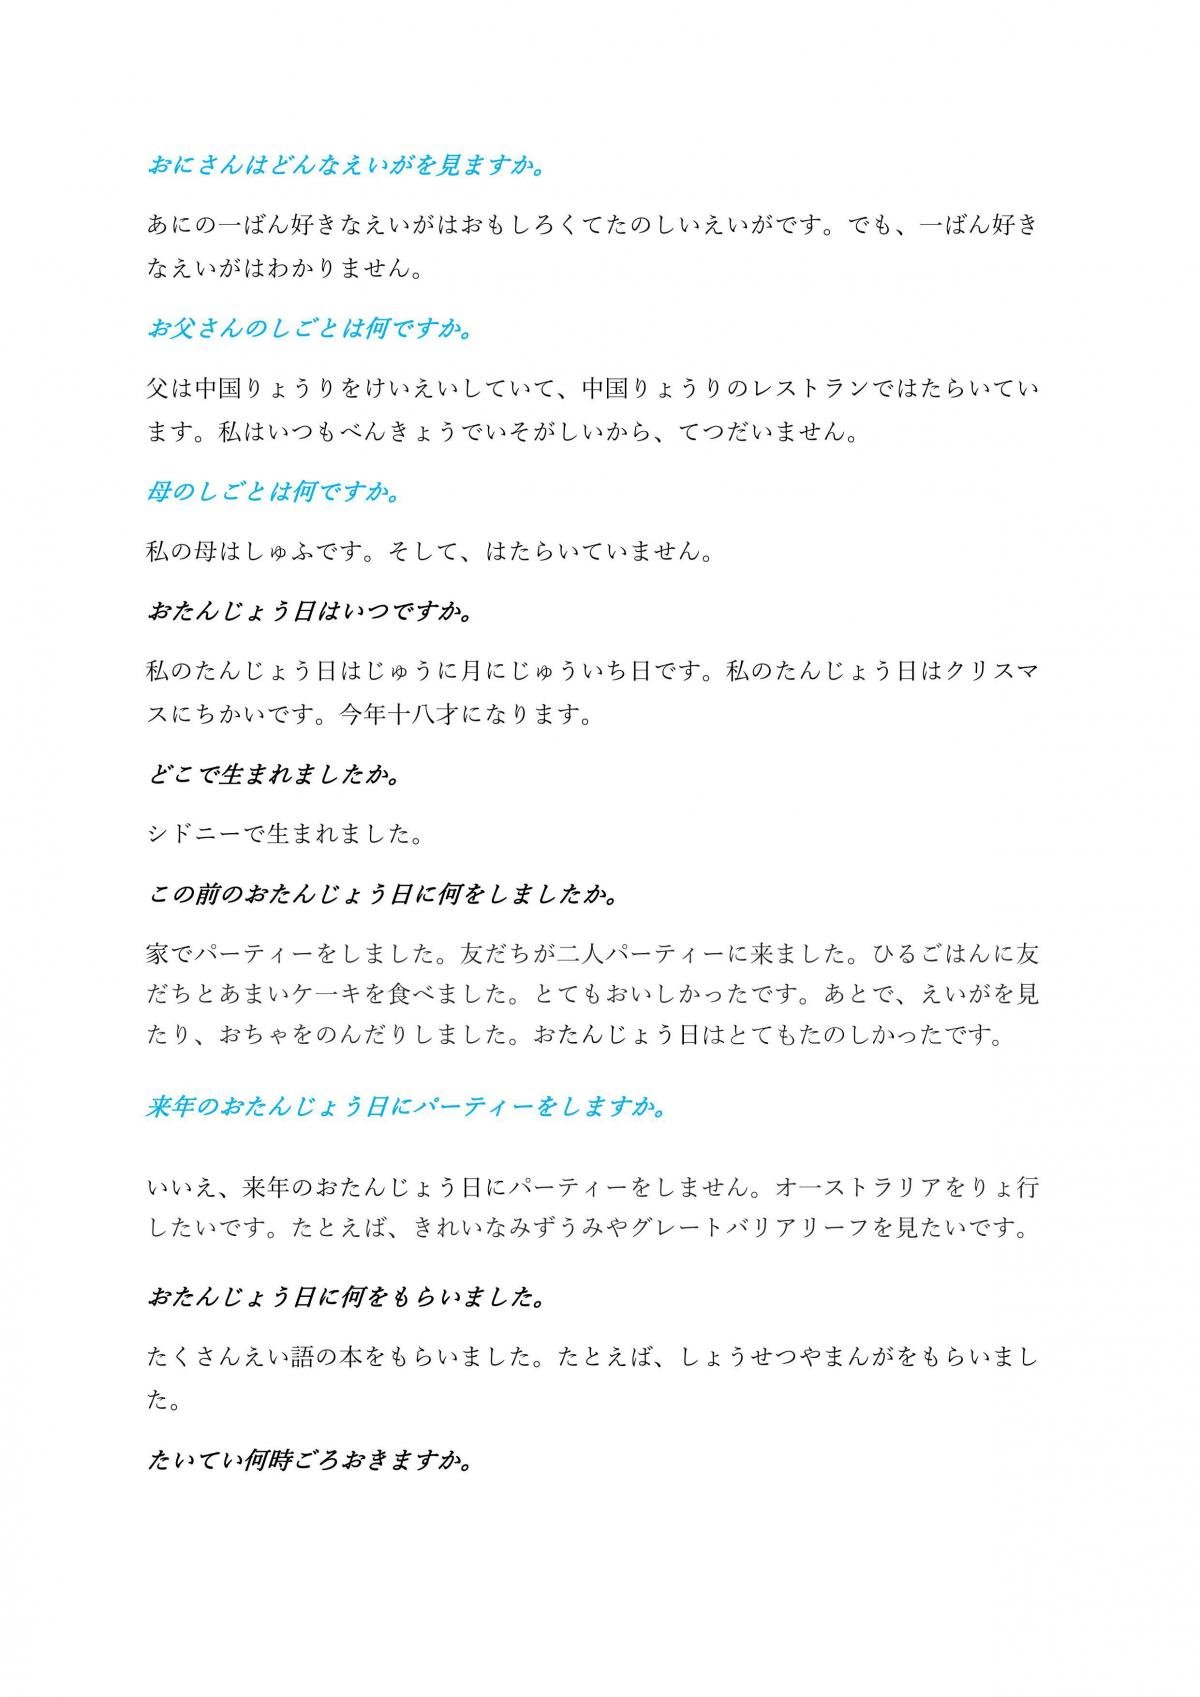 Japanese Beginner Speaking Script - Page 2